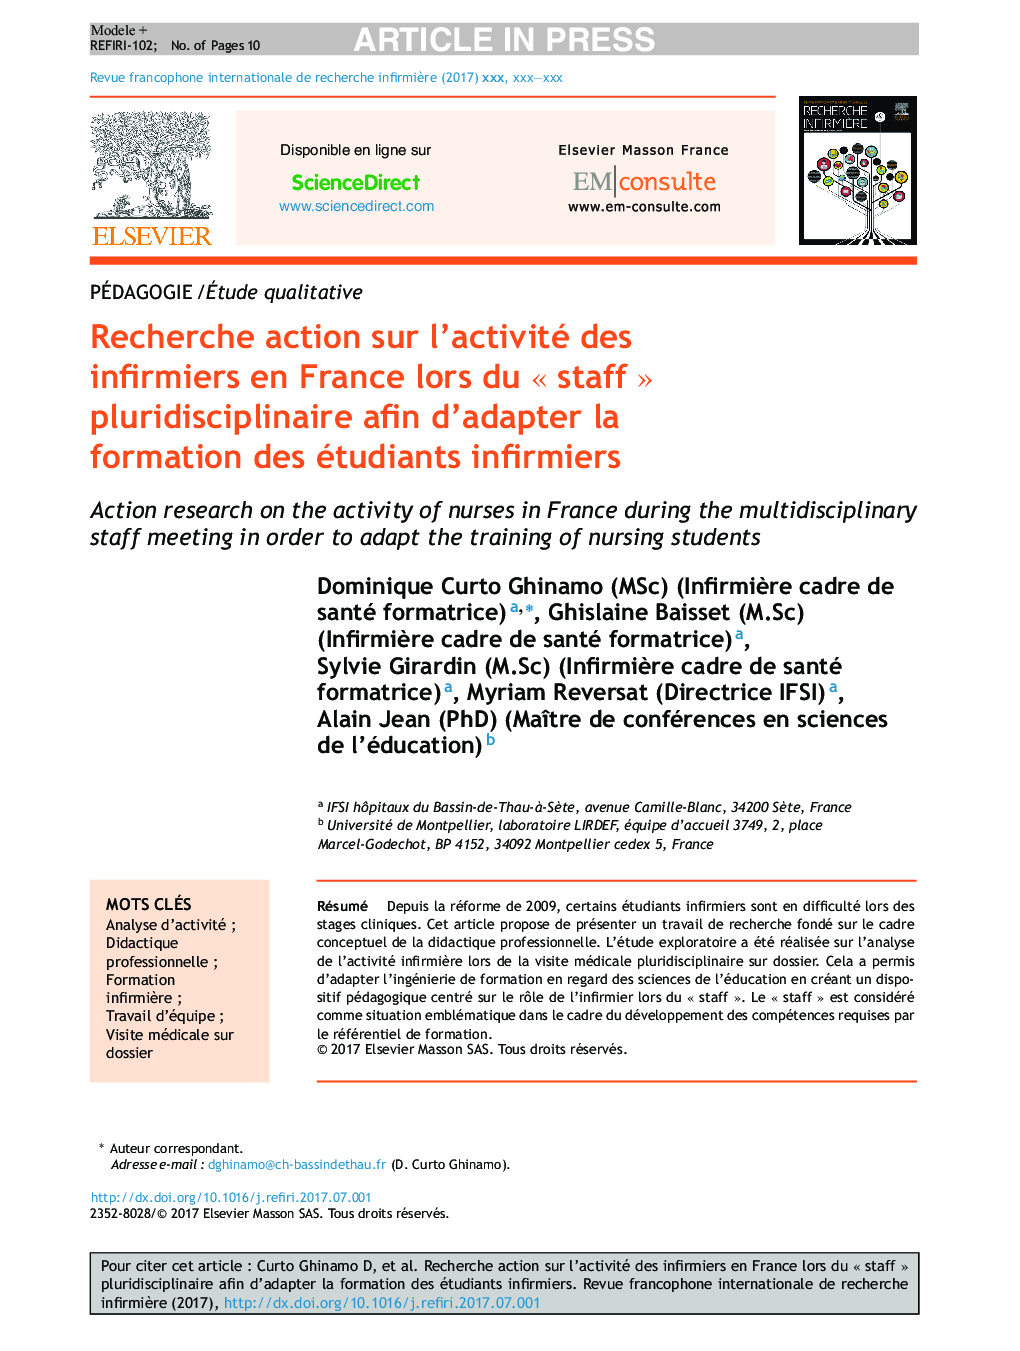 Recherche action sur l'activité des infirmiers en France lors du Â«Â staffÂ Â» pluridisciplinaire afin d'adapter la formation des étudiants infirmiers